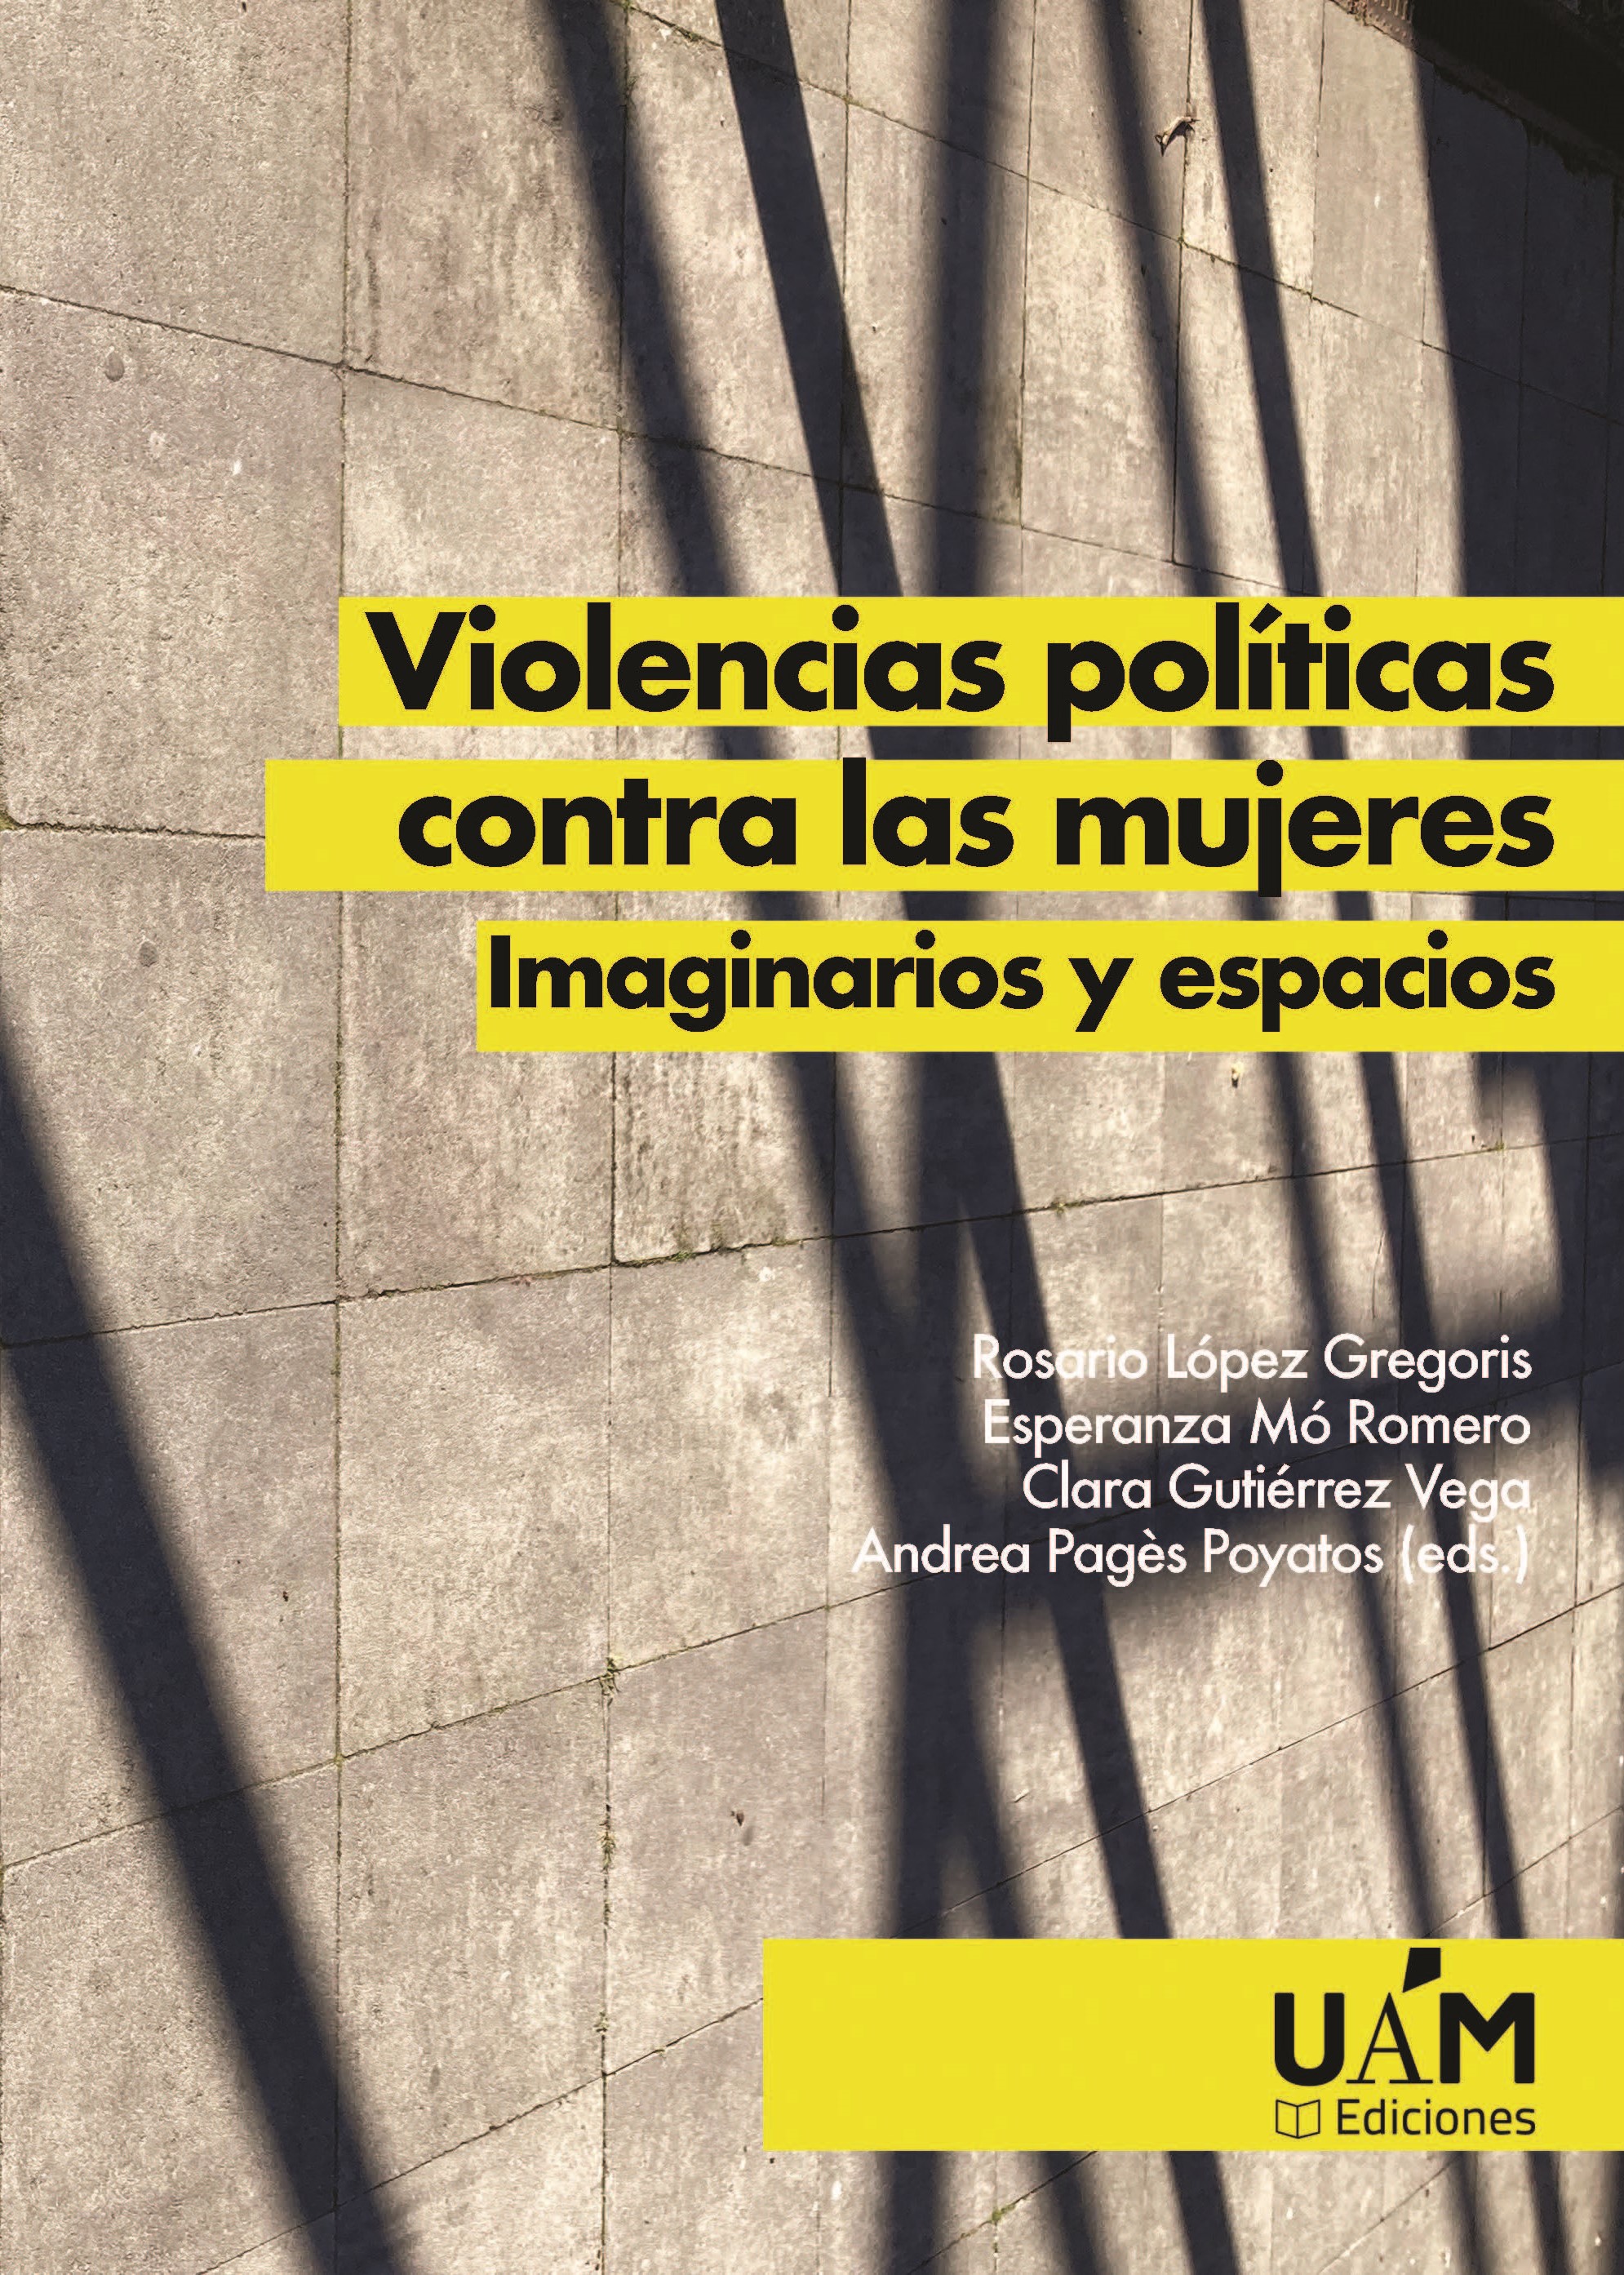 Imagen de portada del libro Violencias políticas contra las mujeres